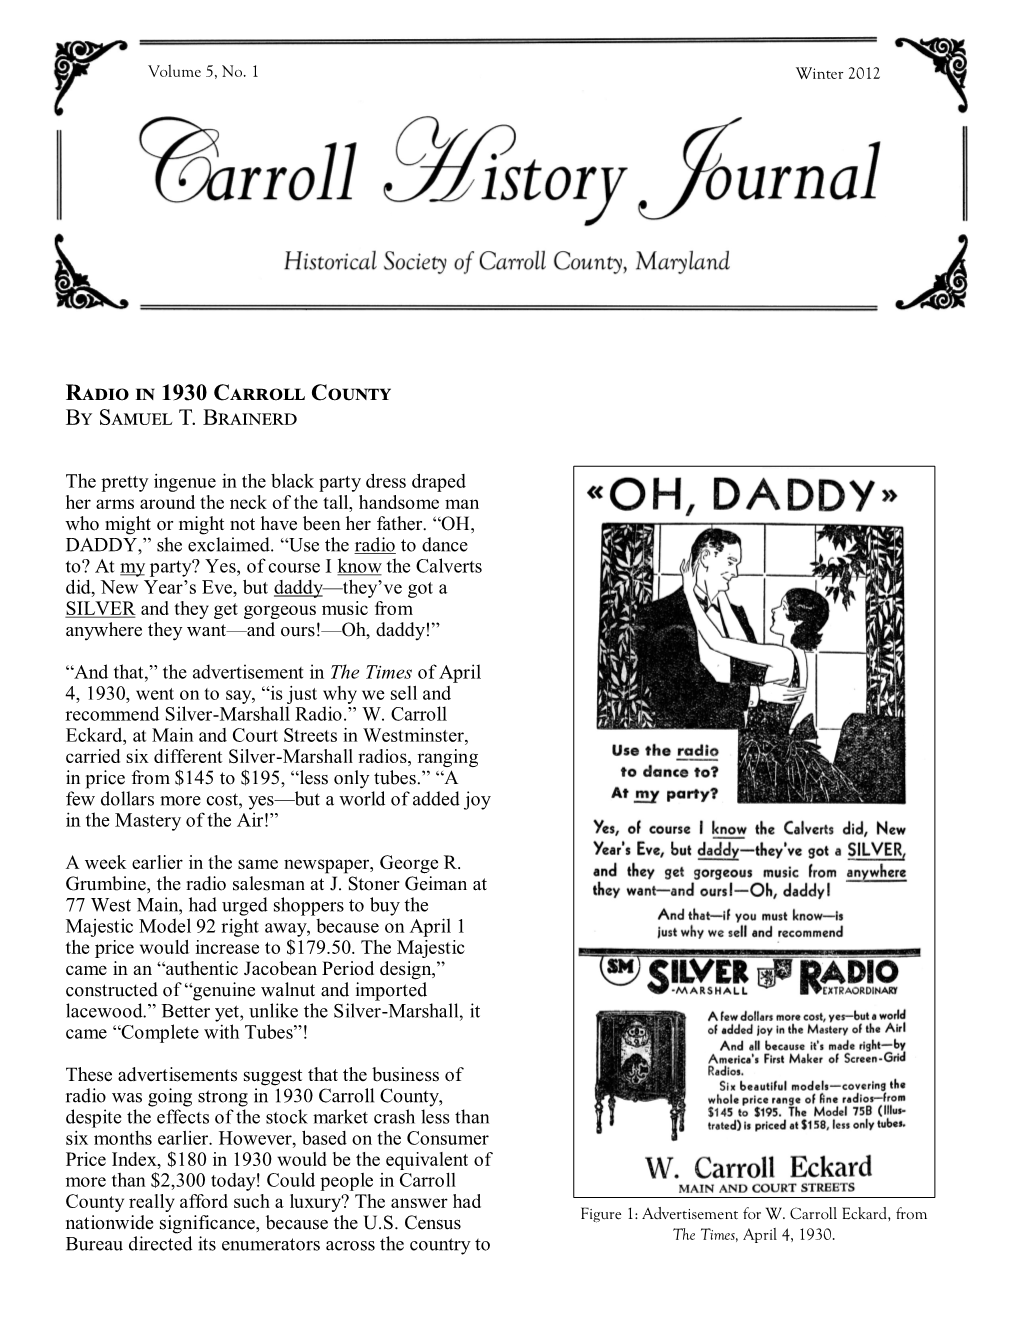 Radio in 1930 Carroll County by Samuel T. Brainerd